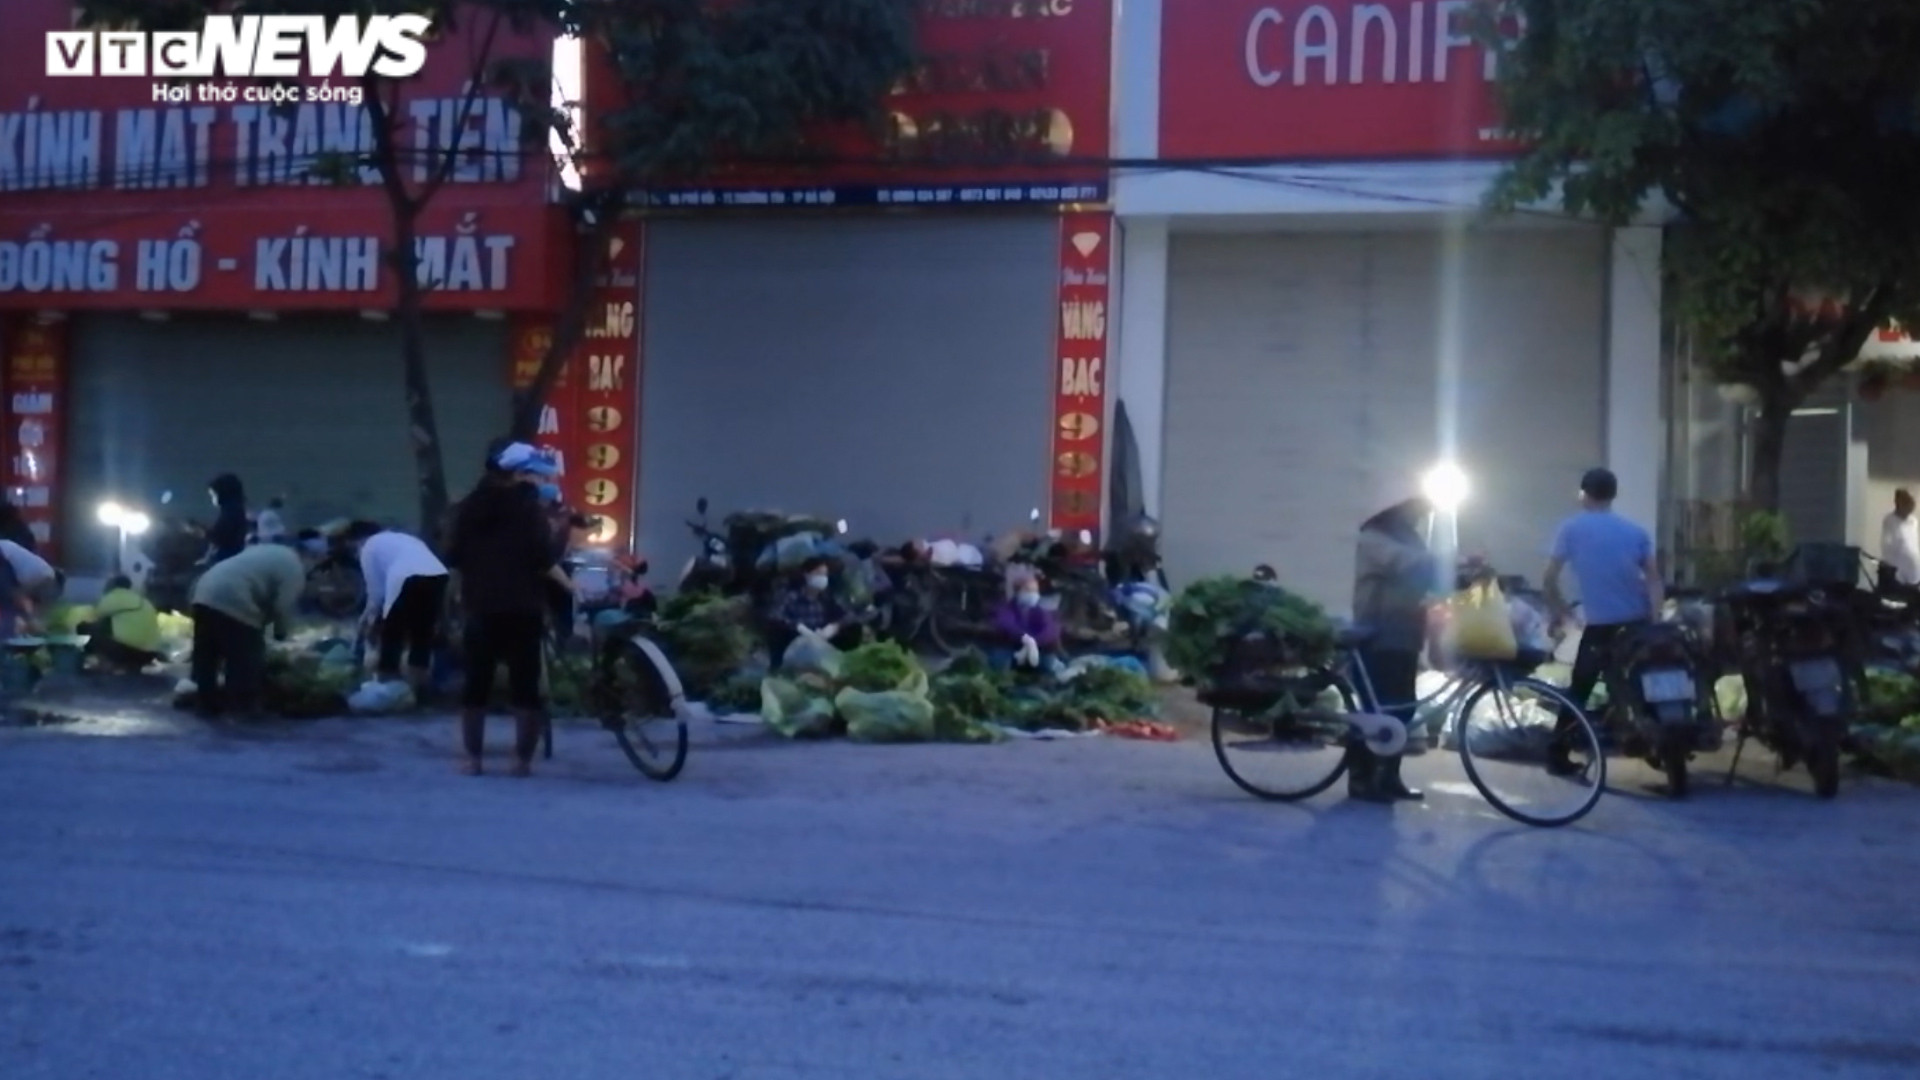 Hà Nội: Nhiều chợ cóc, chợ tạm vẫn hoạt động bất chấp lệnh cấm  - 6